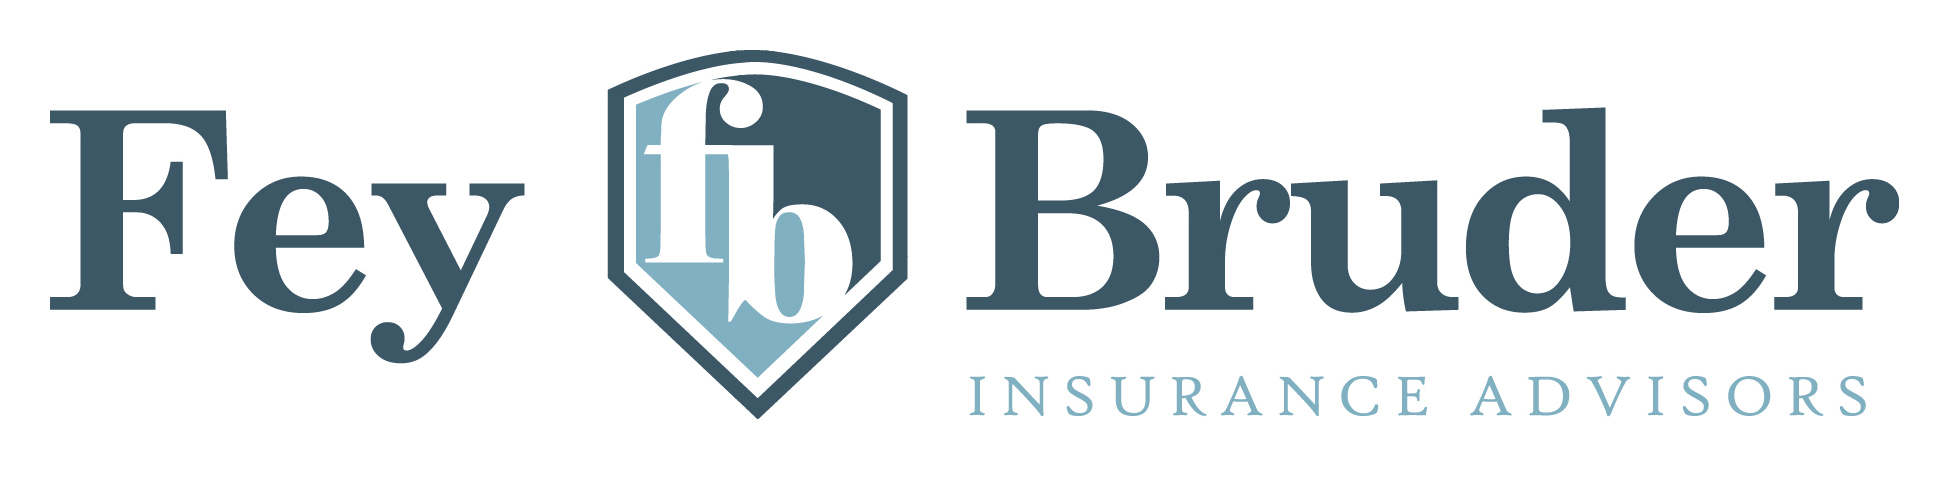 Fey Bruder Insurance Advisors